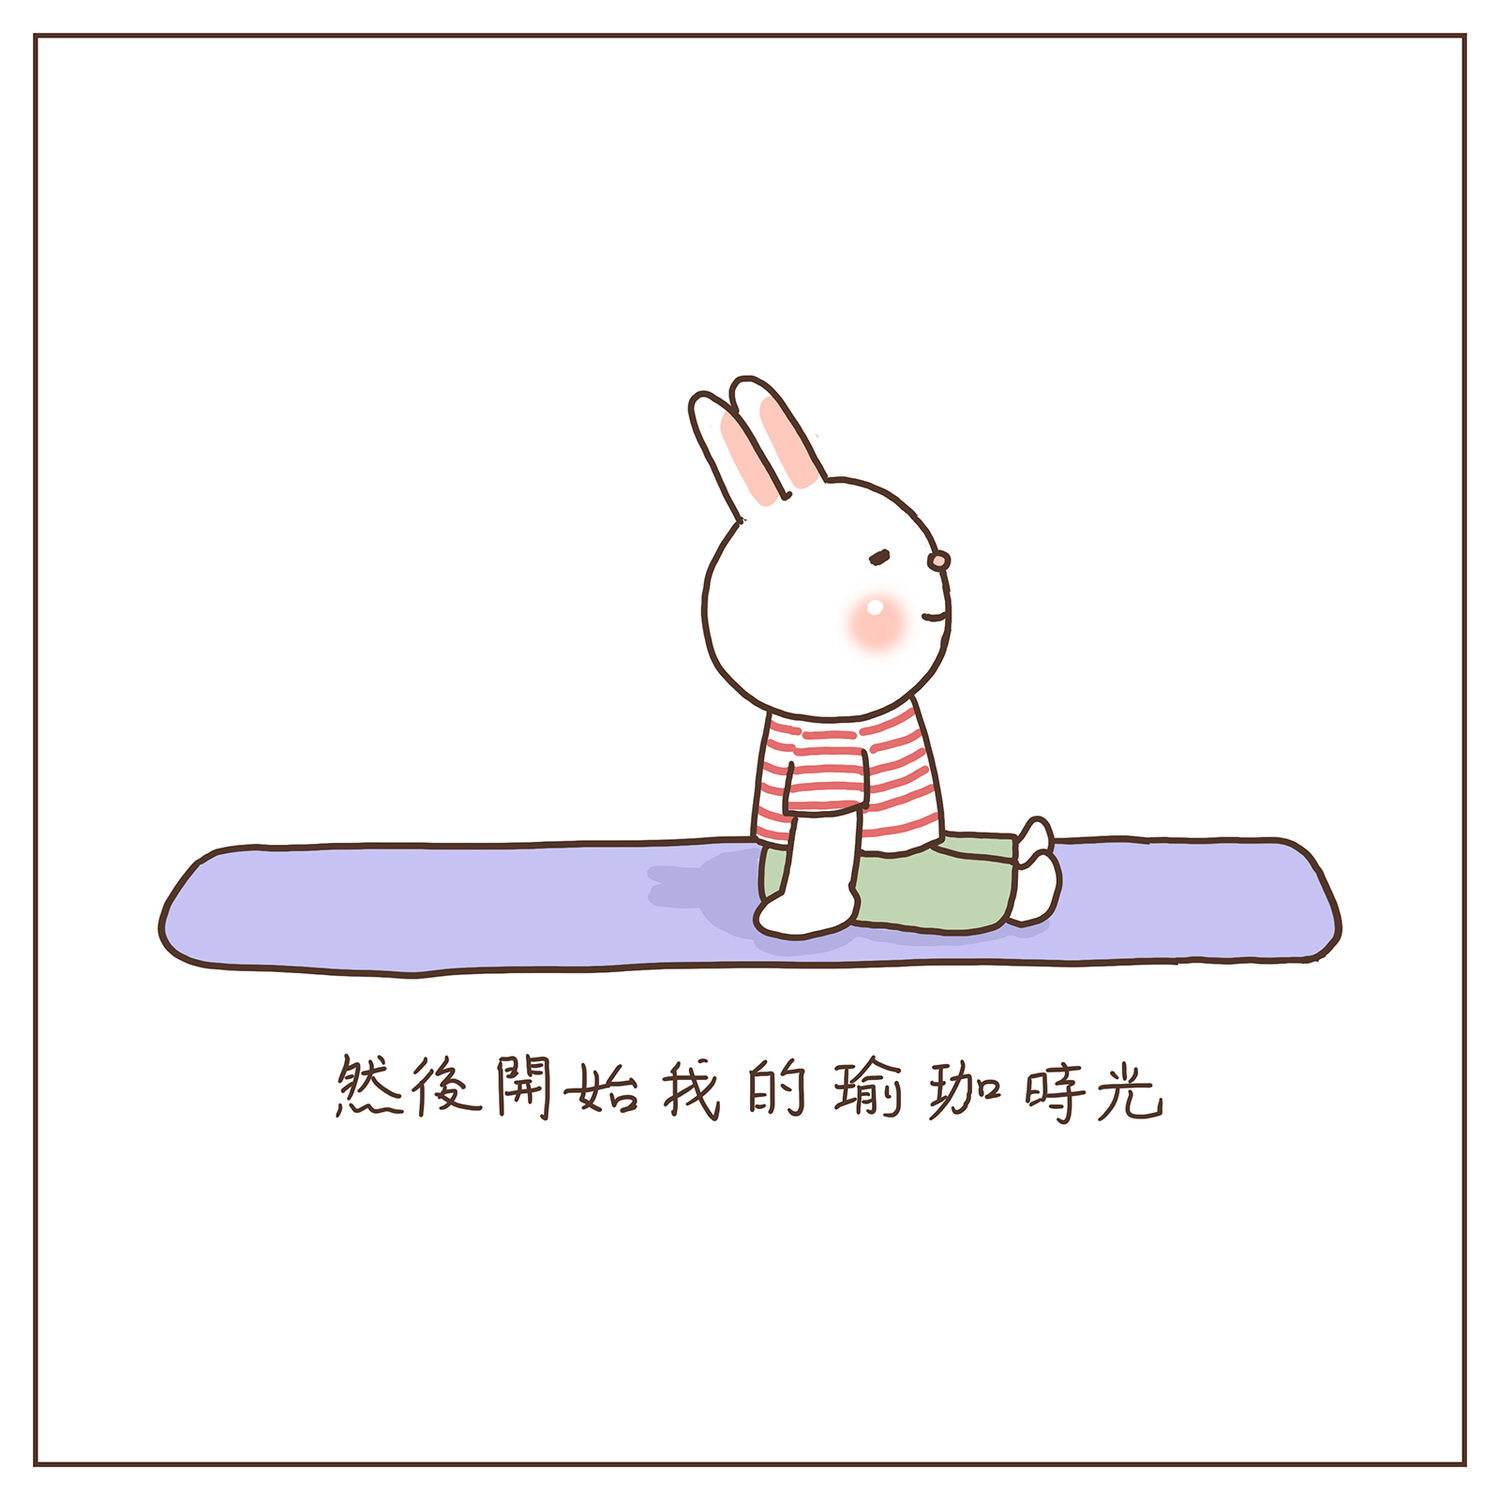 【插畫圖文創作】諾諾的瑜珈墊-3-開始我的瑜珈時光